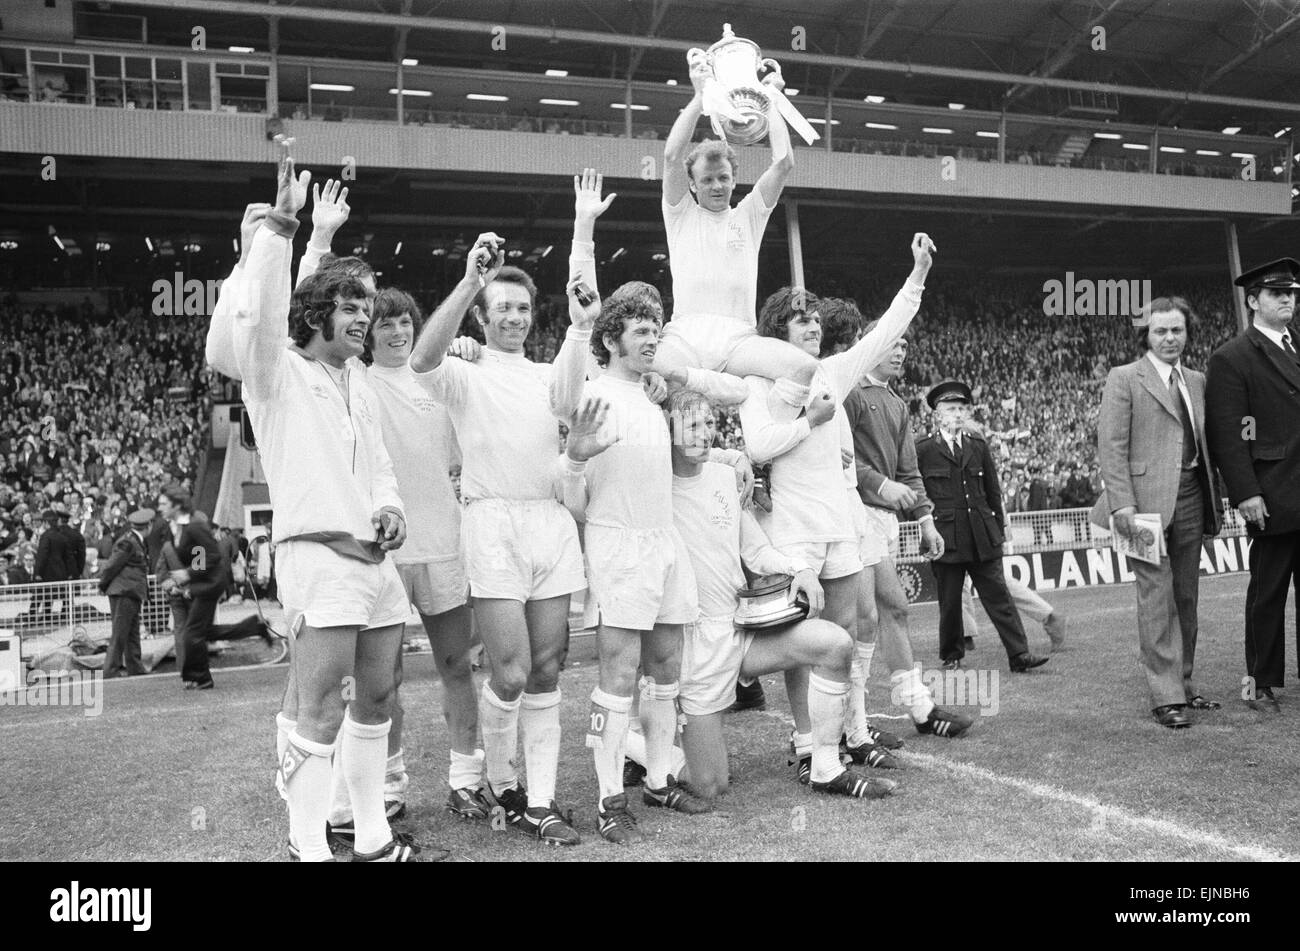 Billy Bremner Leeds United le capitaine est soulevé par ses coéquipiers à la F.A. Cup après leur victoire sur néant un Arsenal en finale de la coupe d'Angleterre. 6 mai 1972 *** *** Local Caption Planman - - 05/07/2010 Banque D'Images